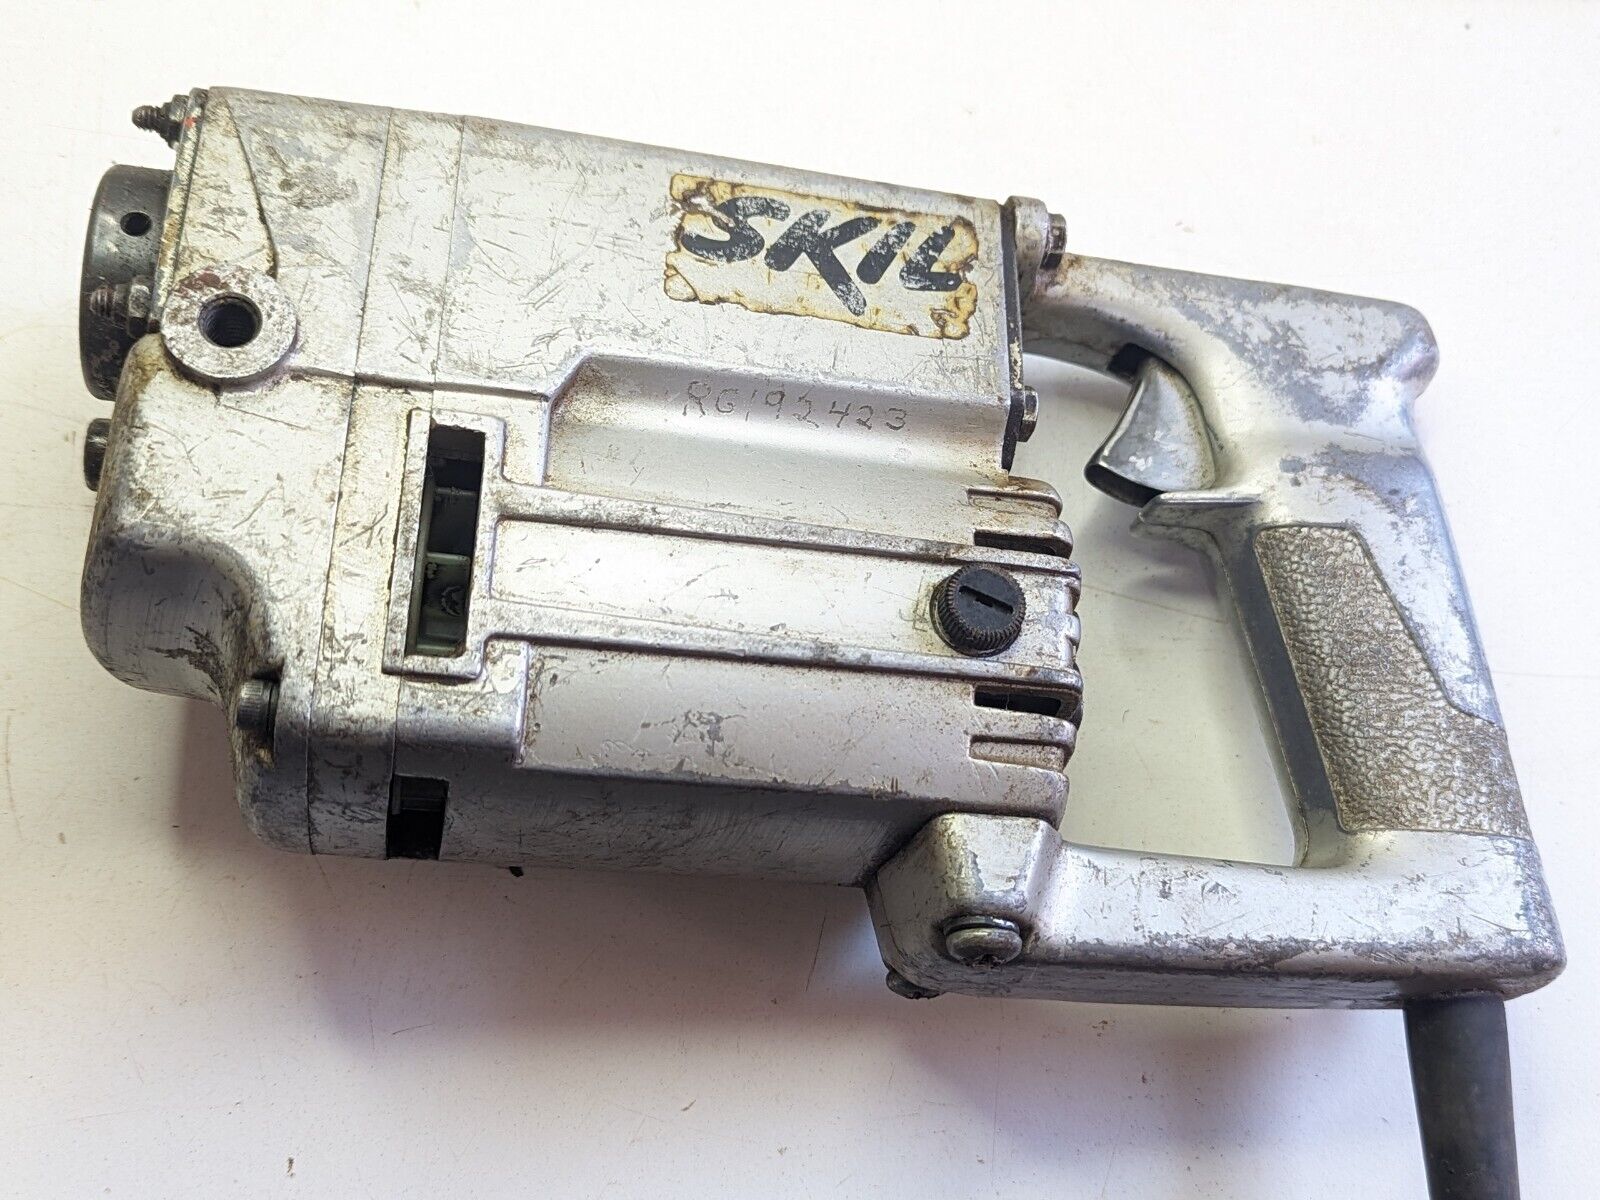 SKIL Heavy Duty Roto Hammer Drill Model 706